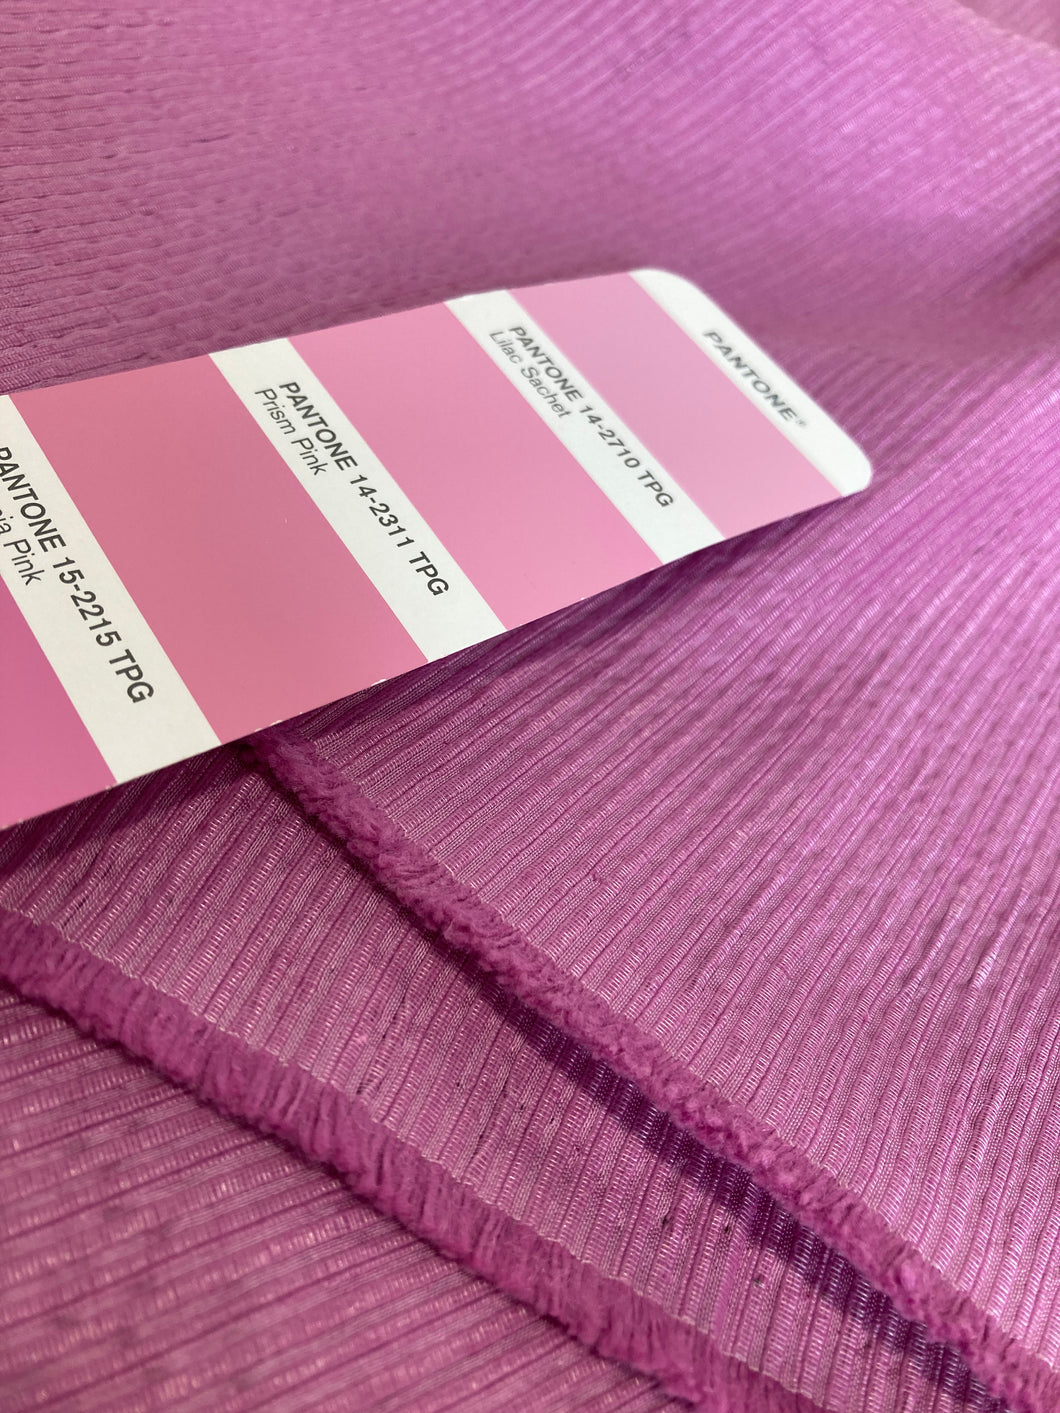 Tessuto cotone bambù seta colore rosa taglio unico 1.6m